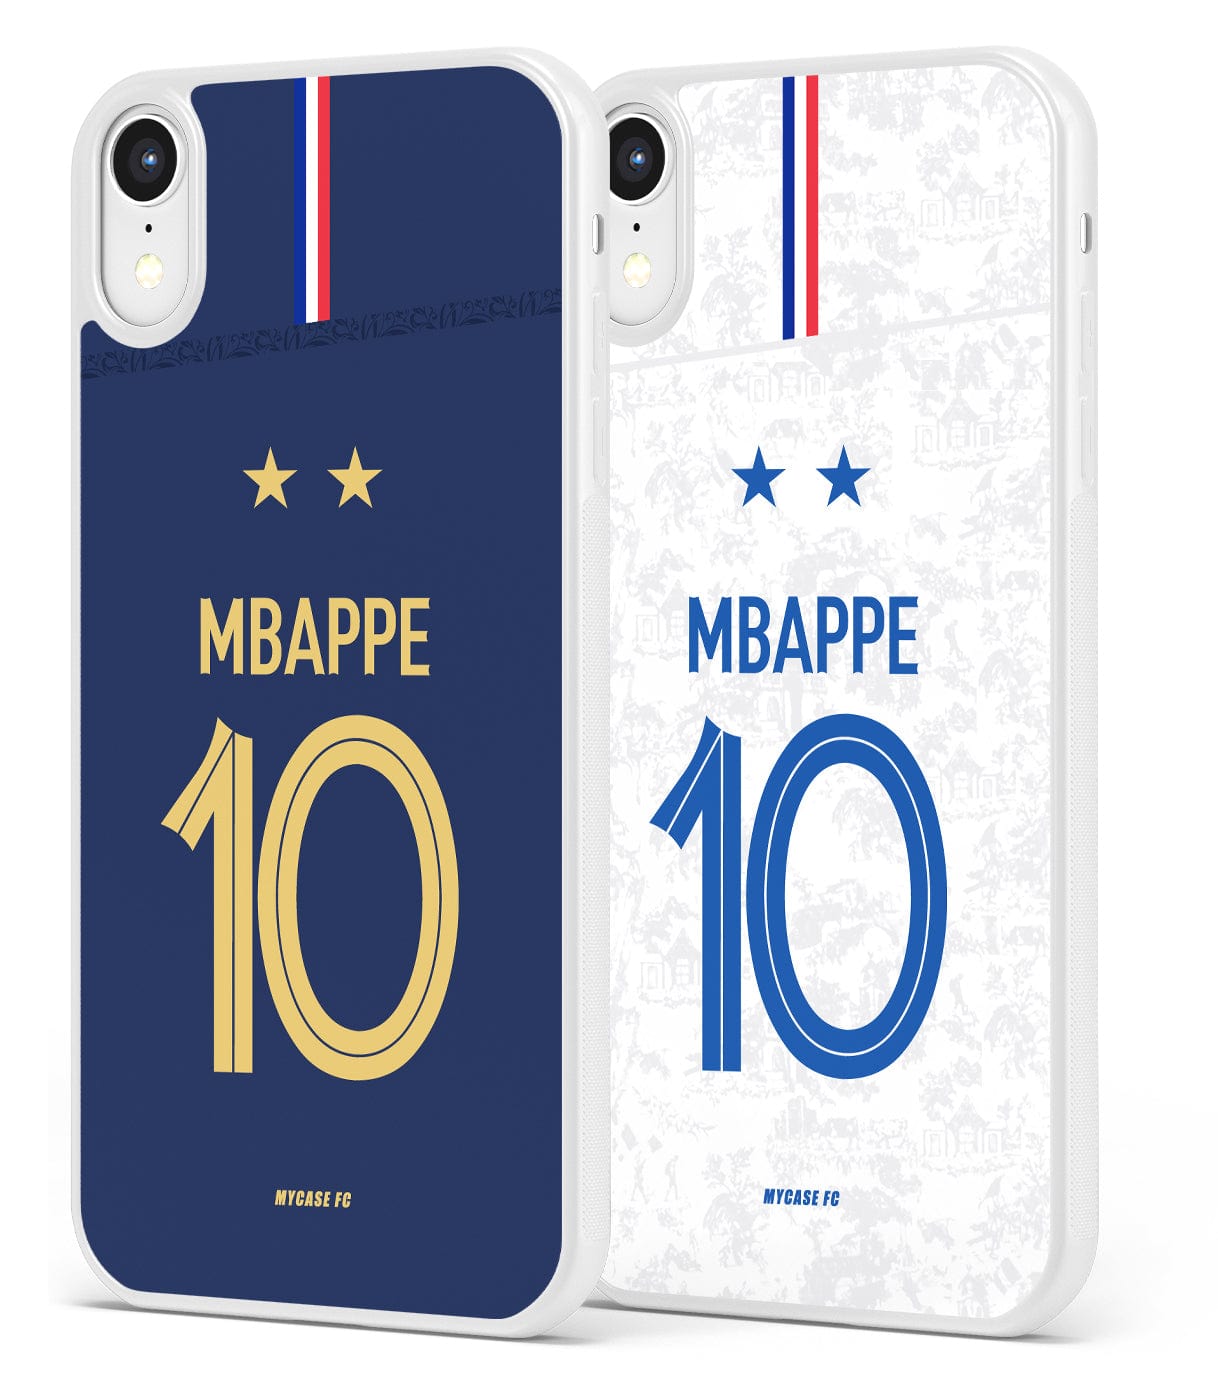 FRANCE - MBAPPÉ - MYCASE FC